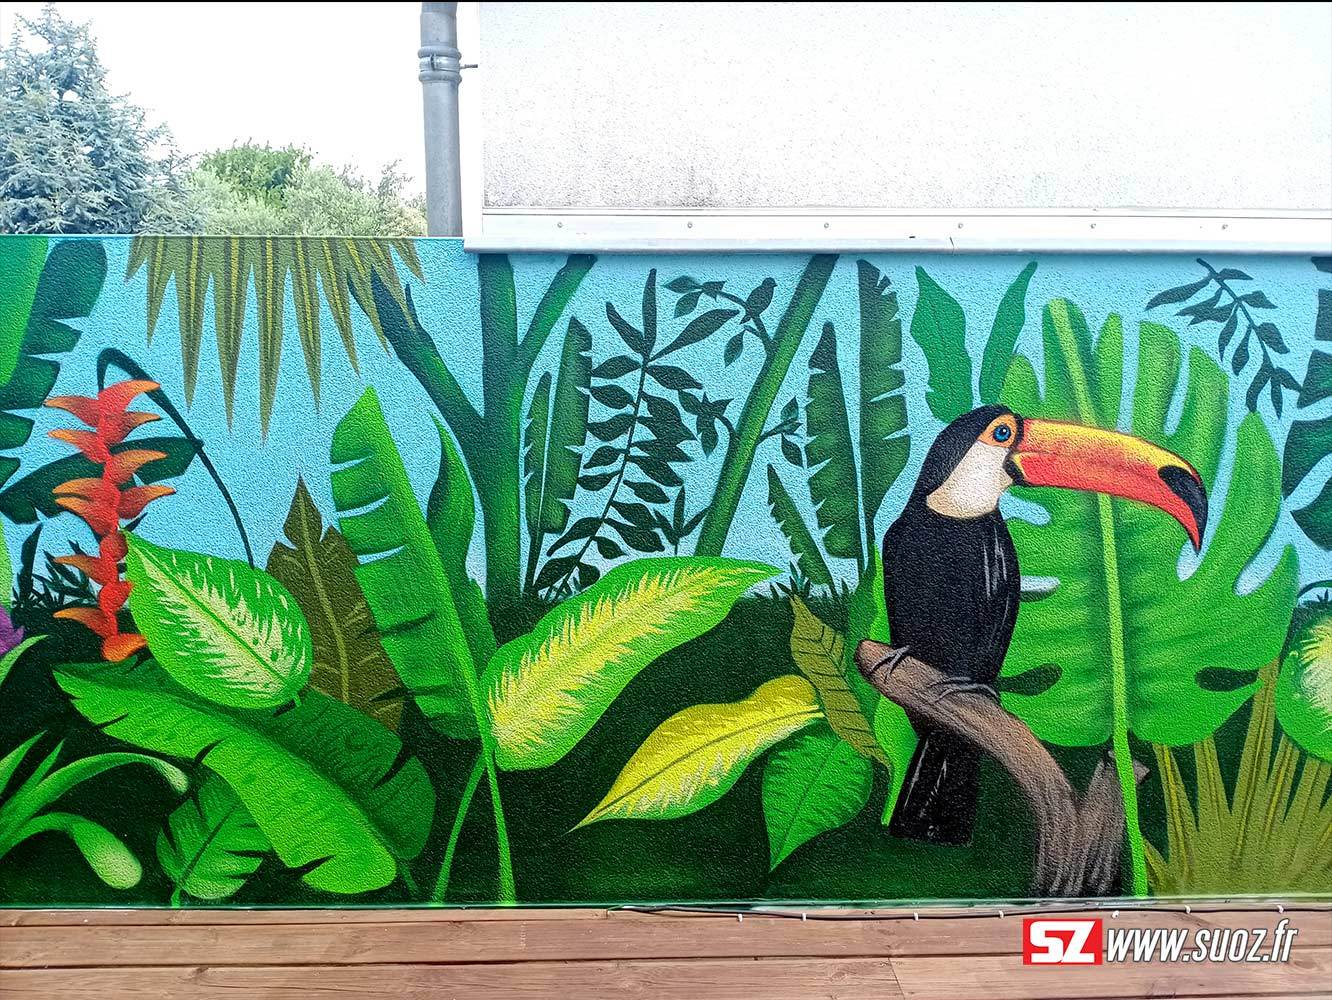 3-graffeur-professionel-suoz-jungle-fleur-tropical-perroquet-toucan-la-rochelle-france-decor-graffiti